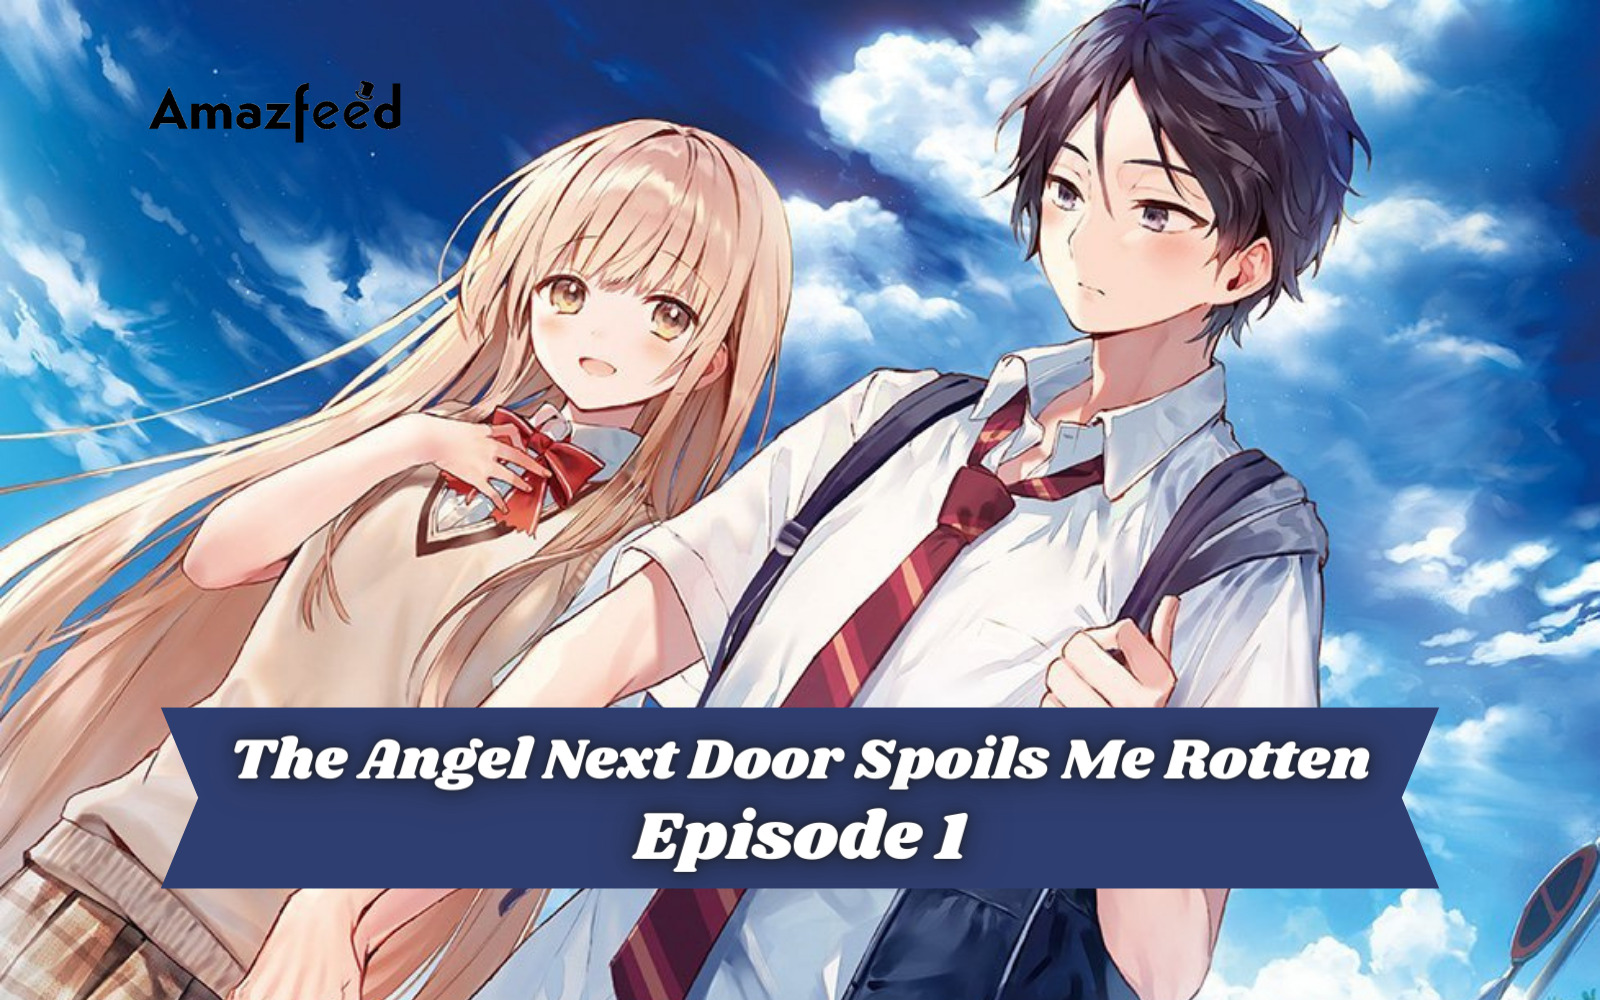 The Angel Next Door Spoils Me Rotten Episode 1 Release date, Spoiler, Recap  & USA, UK, CANADA Release Date » Amazfeed